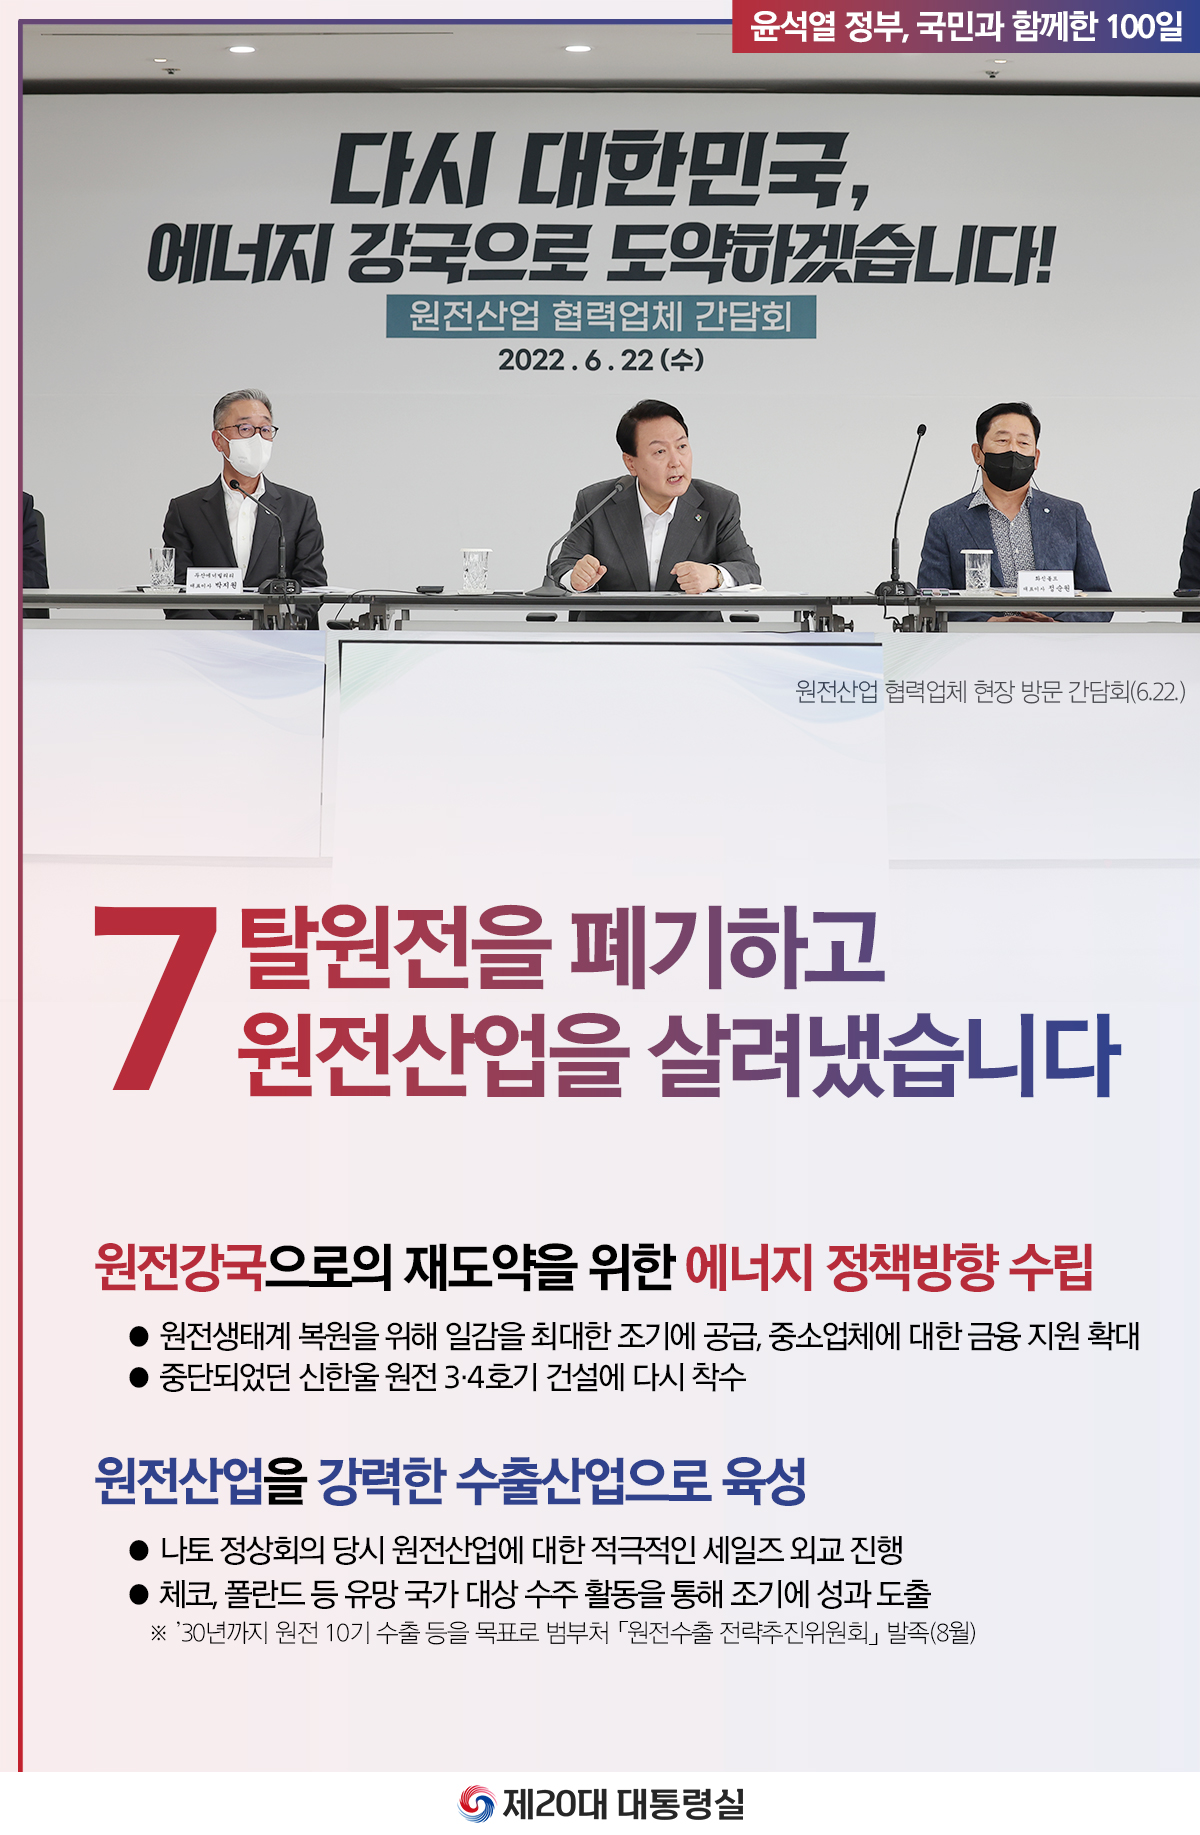 윤석열 정부의 100일, 국민과 함께한 시간들 슬라이드7